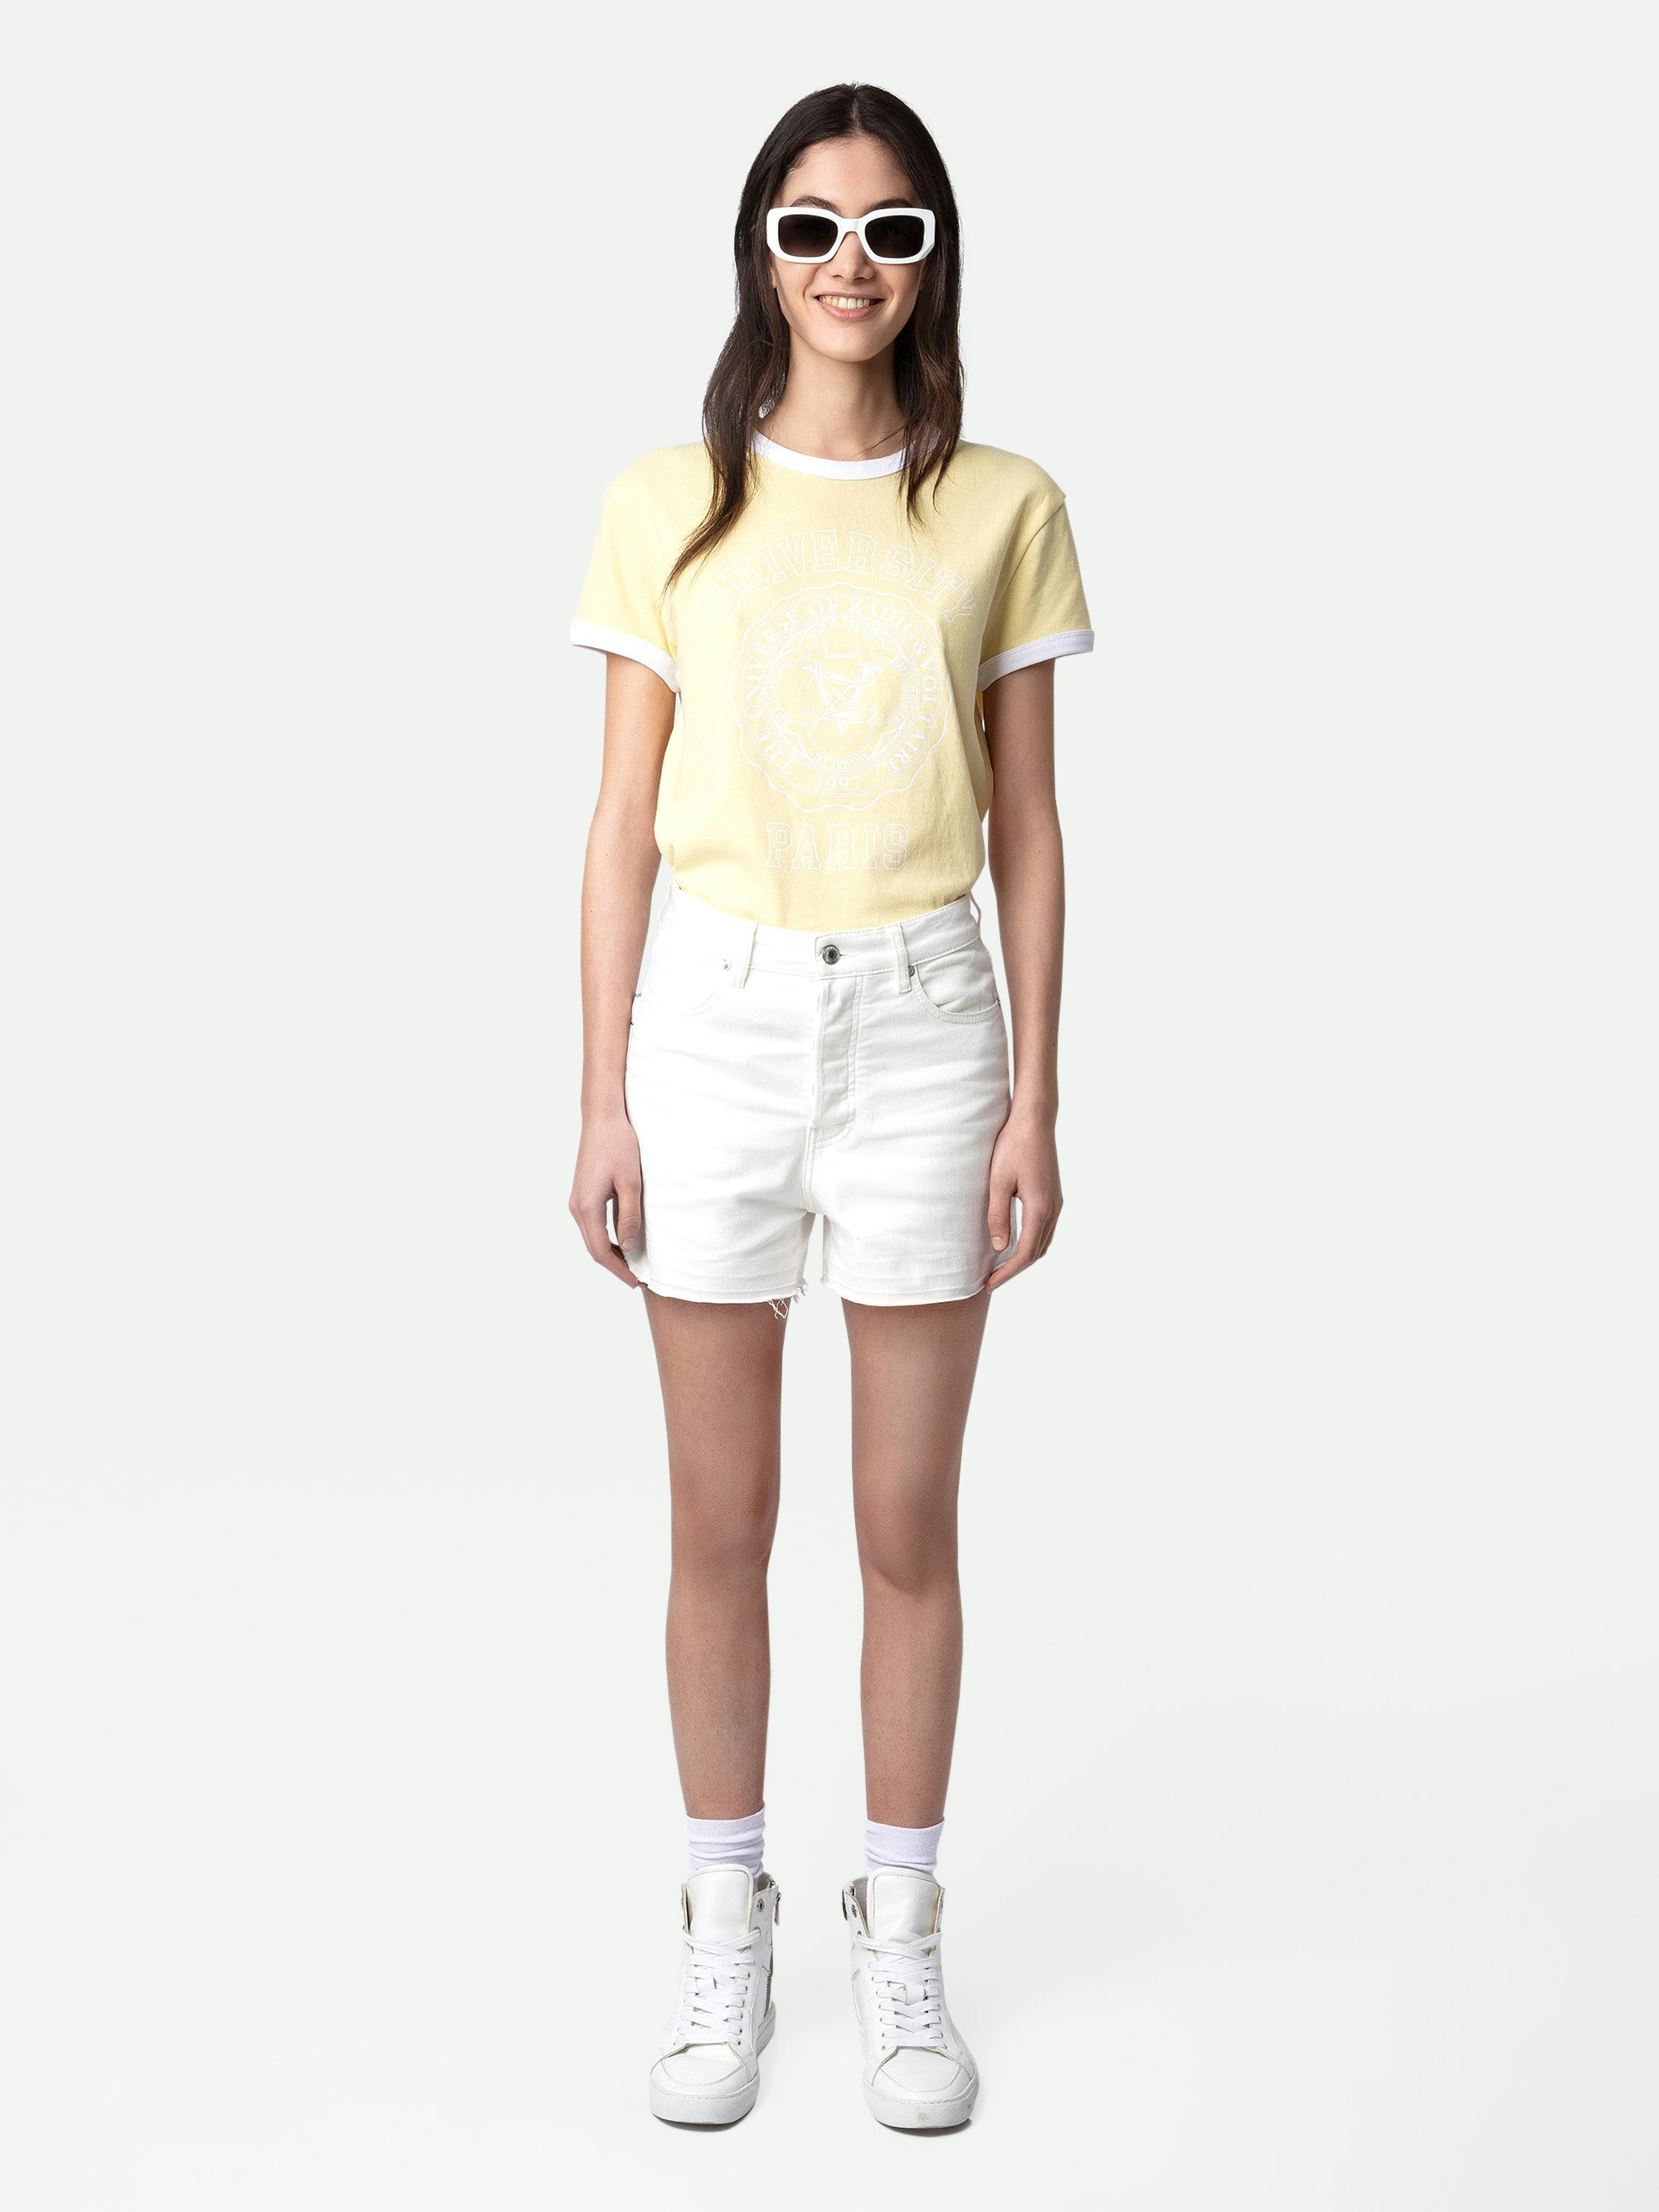 T-shirt Walk University - T-shirt en coton jaune clair à manches courtes, motif University et bords contrastés.